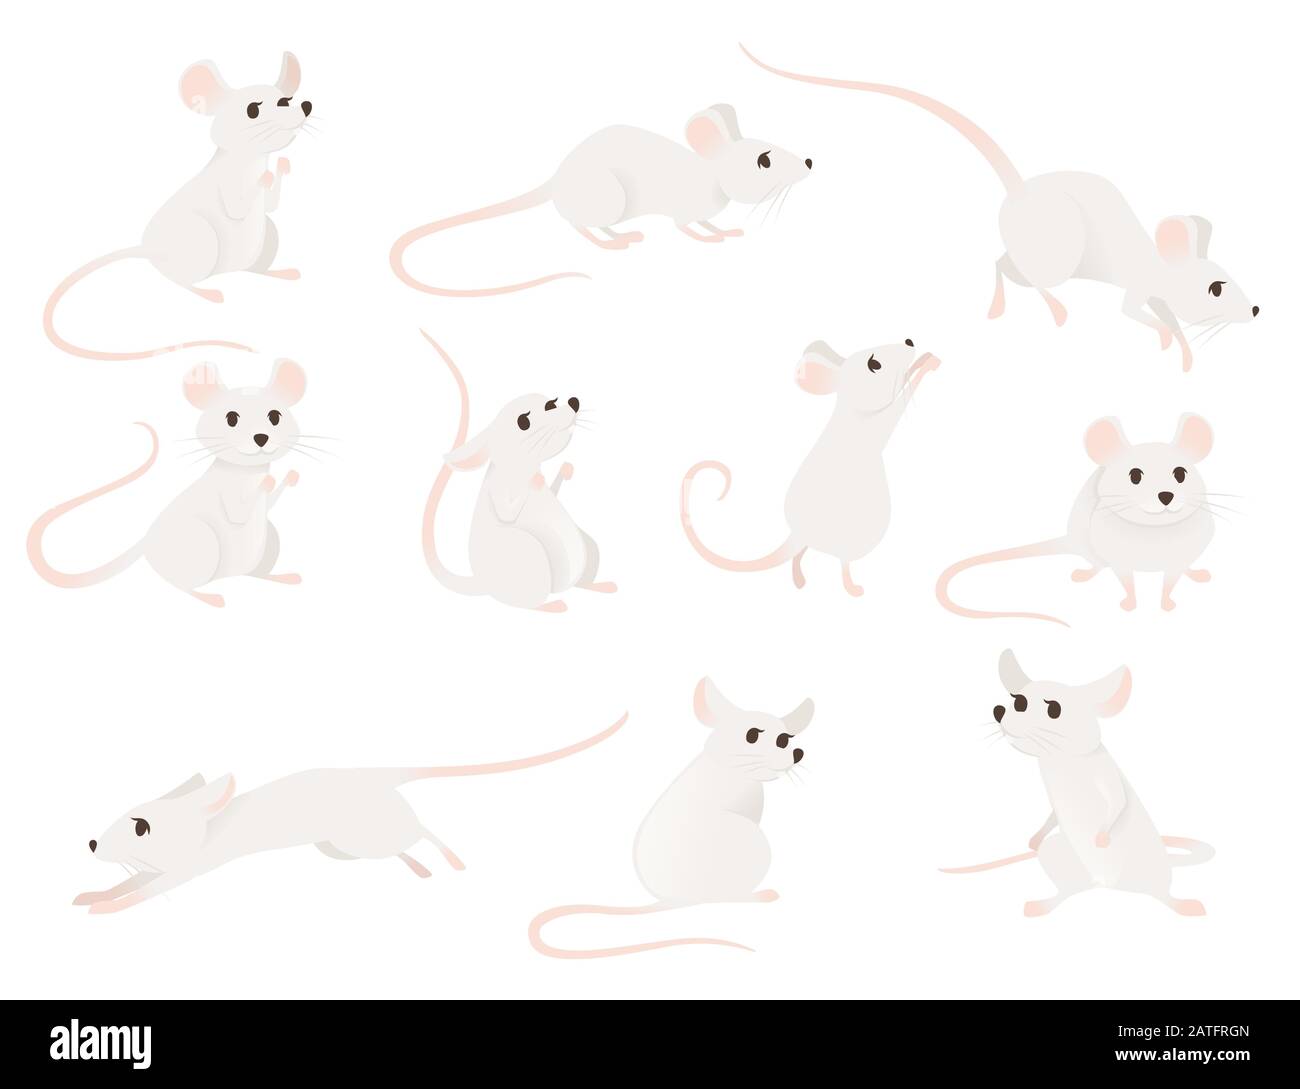 Ensemble de souris grise dans différentes poses mignonne petite animal mammifère illustration vectorielle plate isolée sur fond blanc Illustration de Vecteur